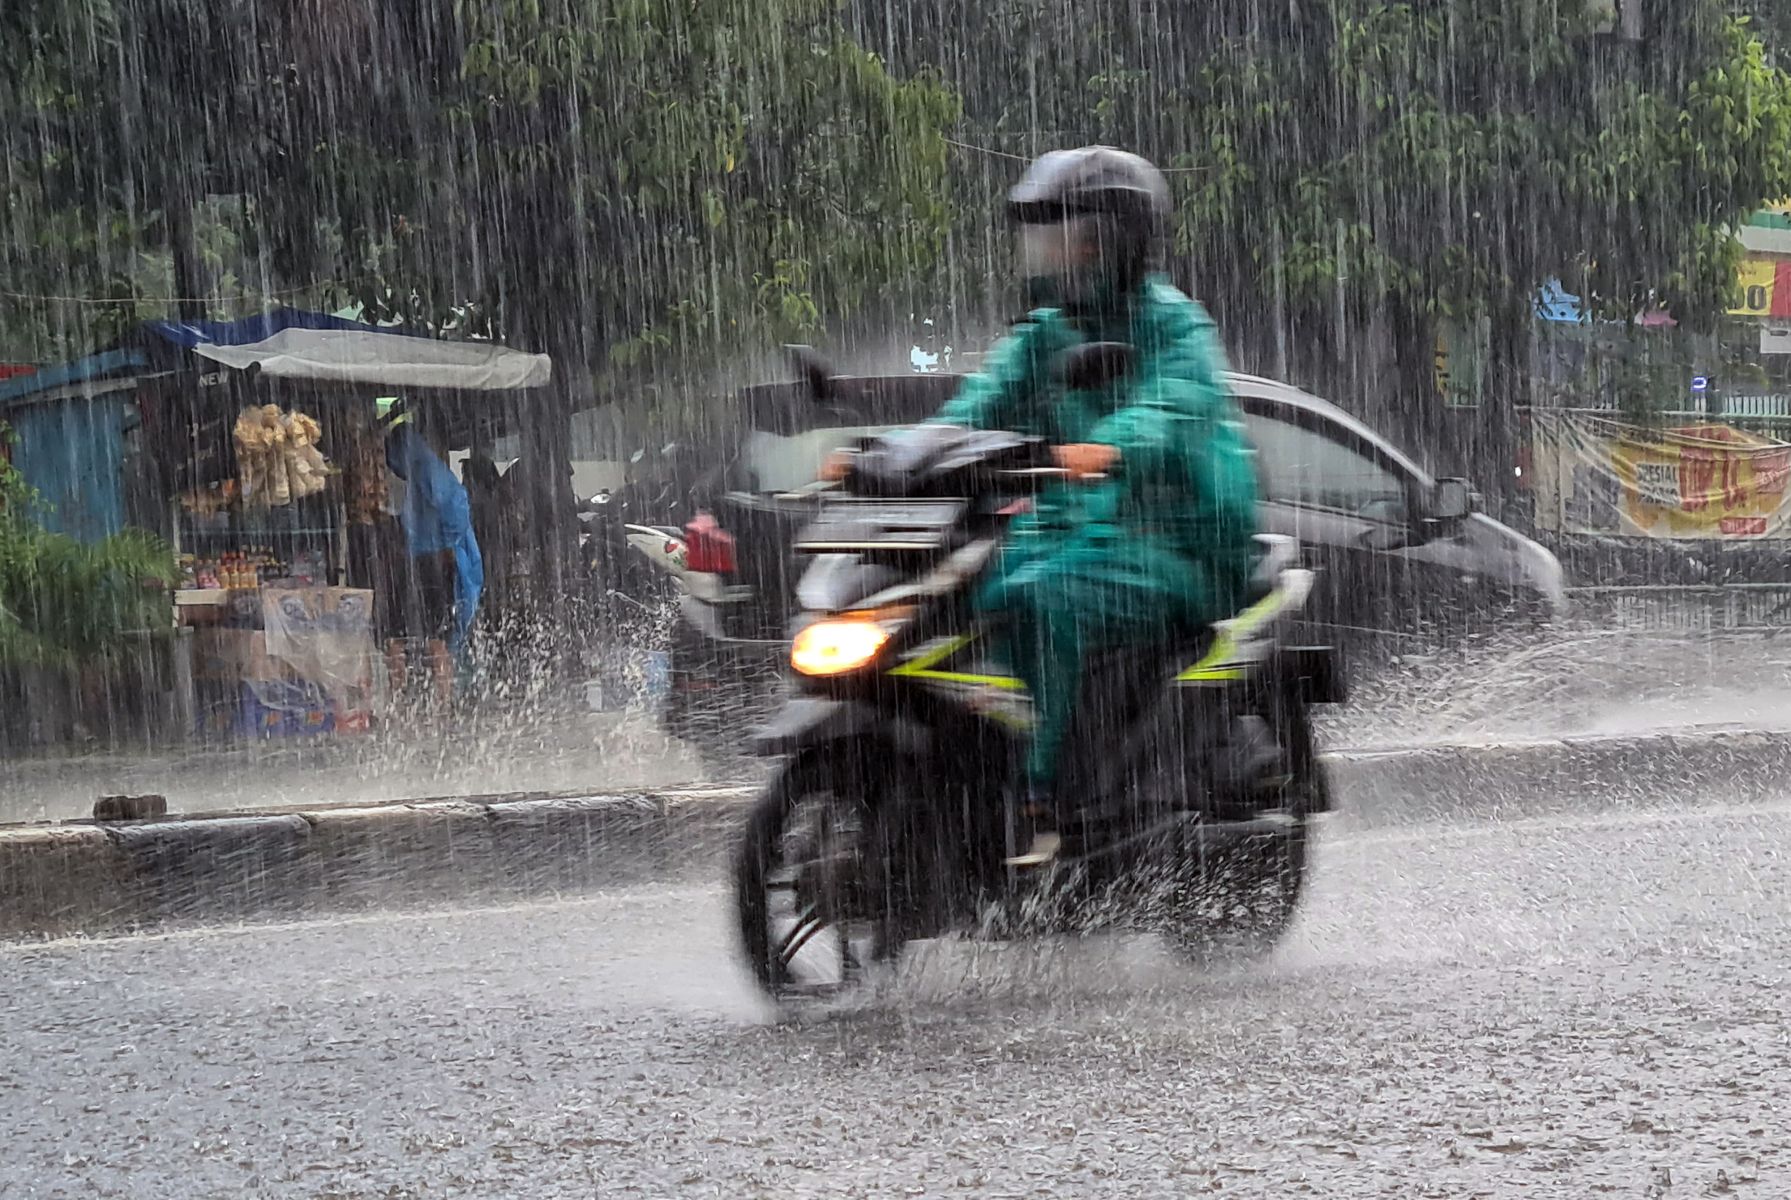 BMKG: Sejumlah Wilayah di Indonesia Berpotensi Terjadi Hujan Lebat